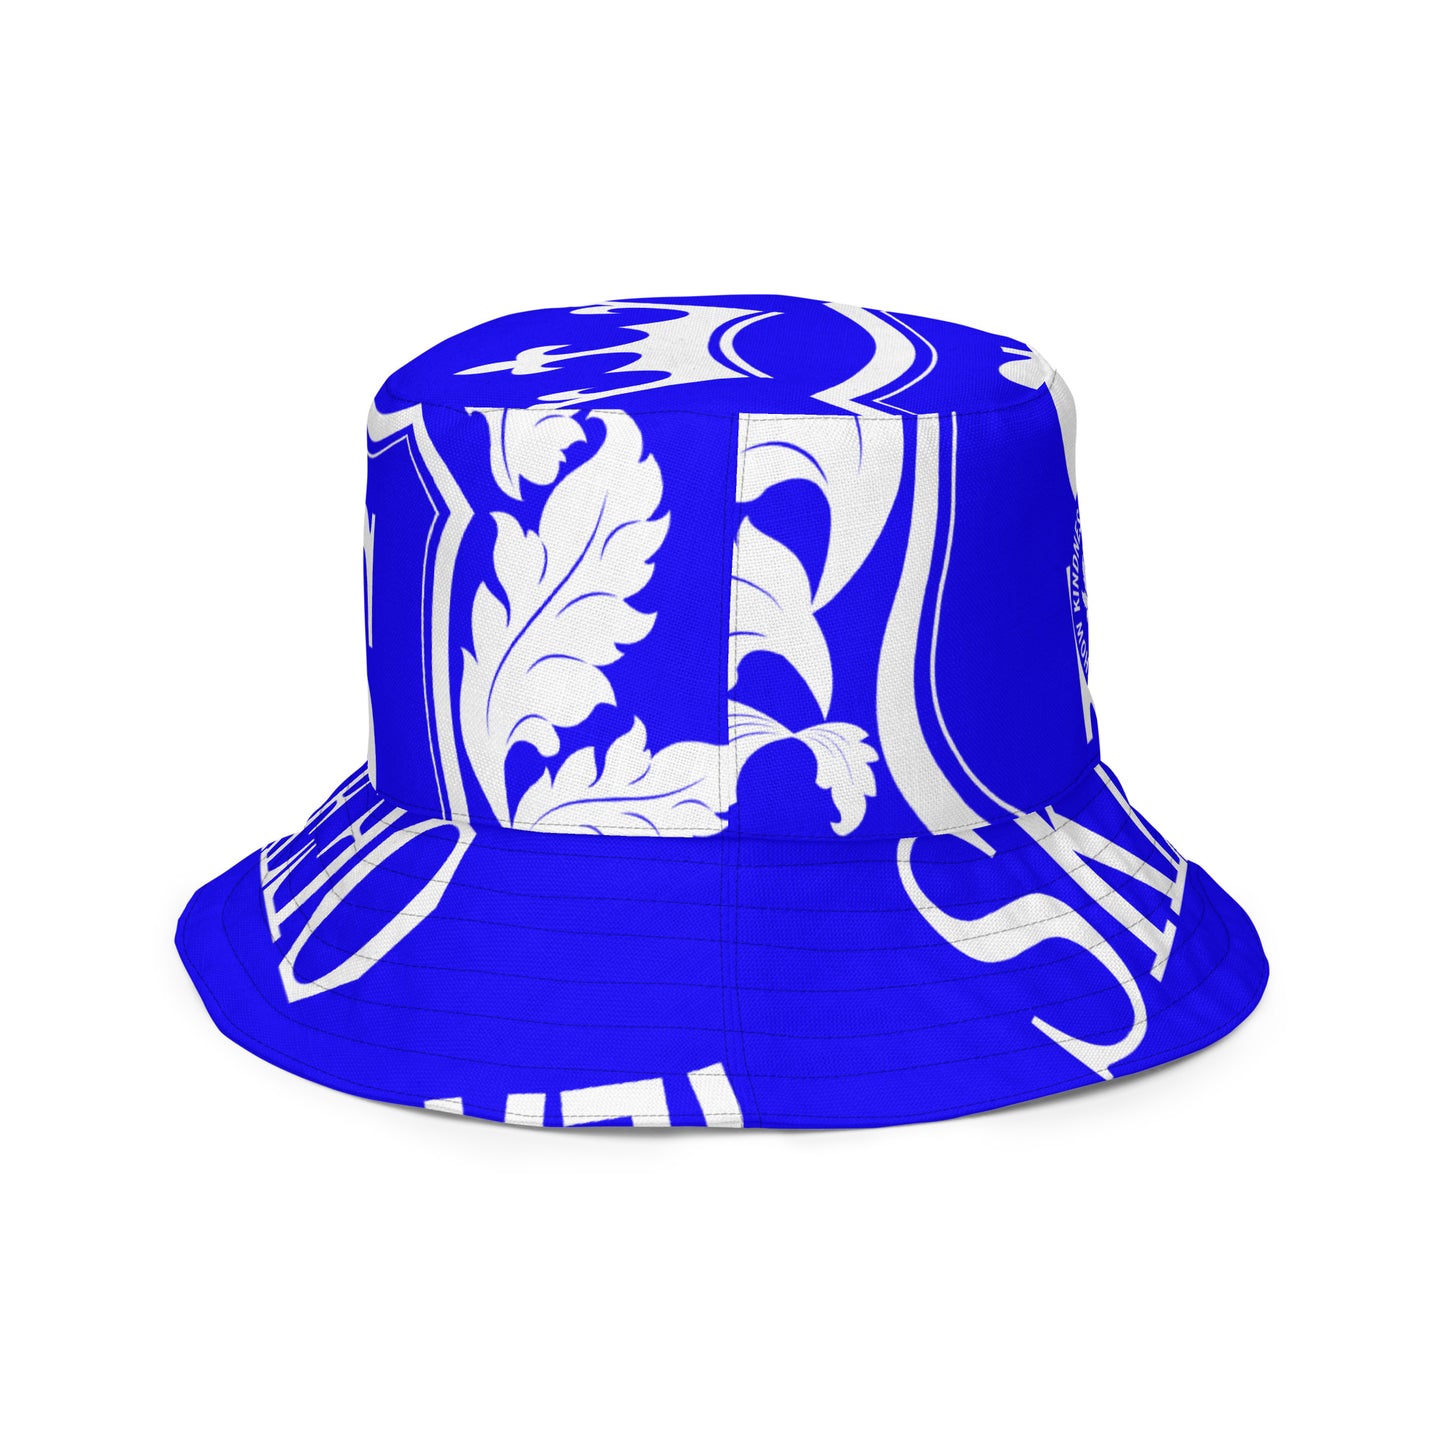 1 ASK Neon Blue Reversible bucket hat